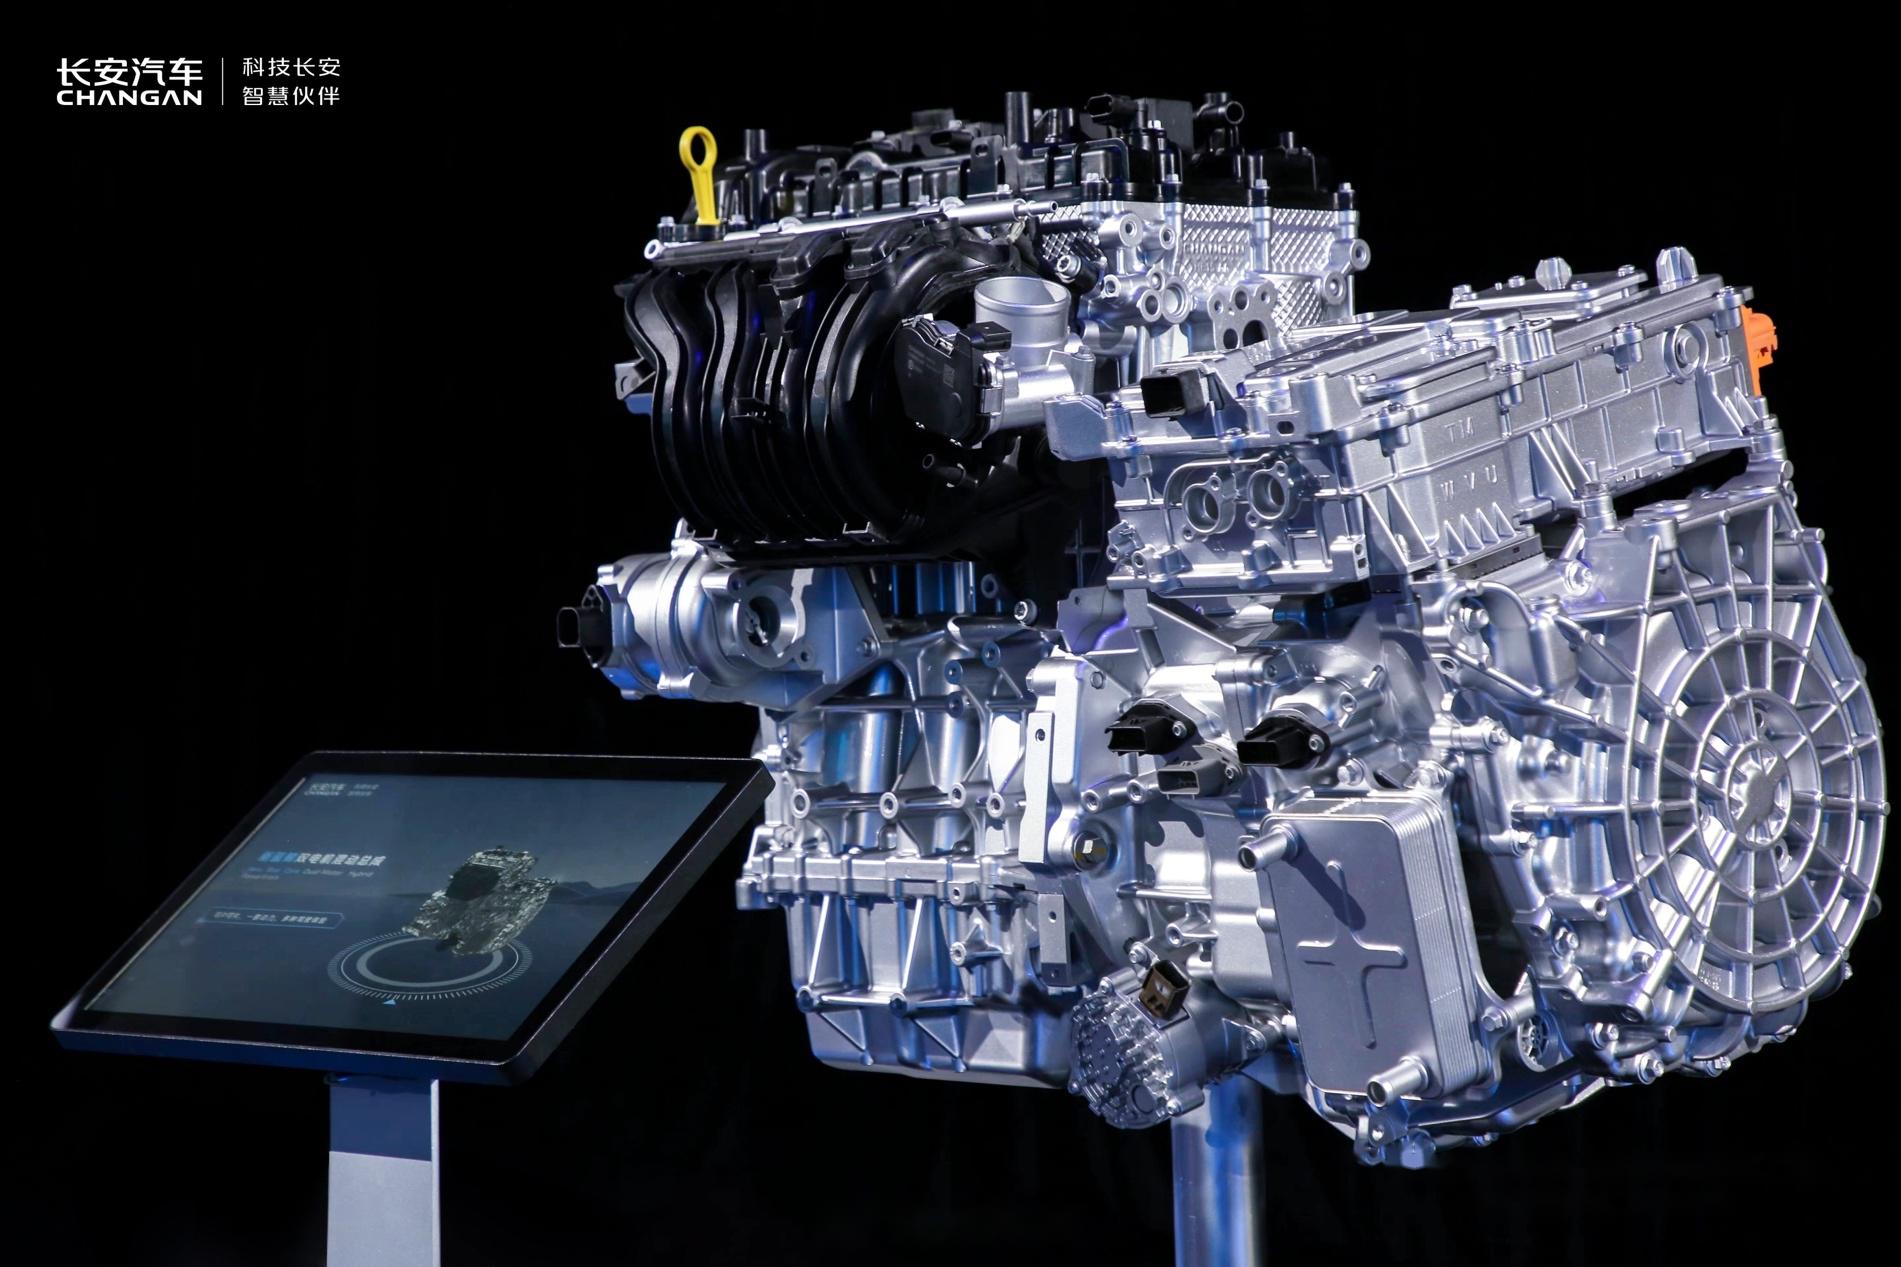 长安汽车发布新蓝鲸动力,三大首发技术: 1,500bar的超高压燃油喷射